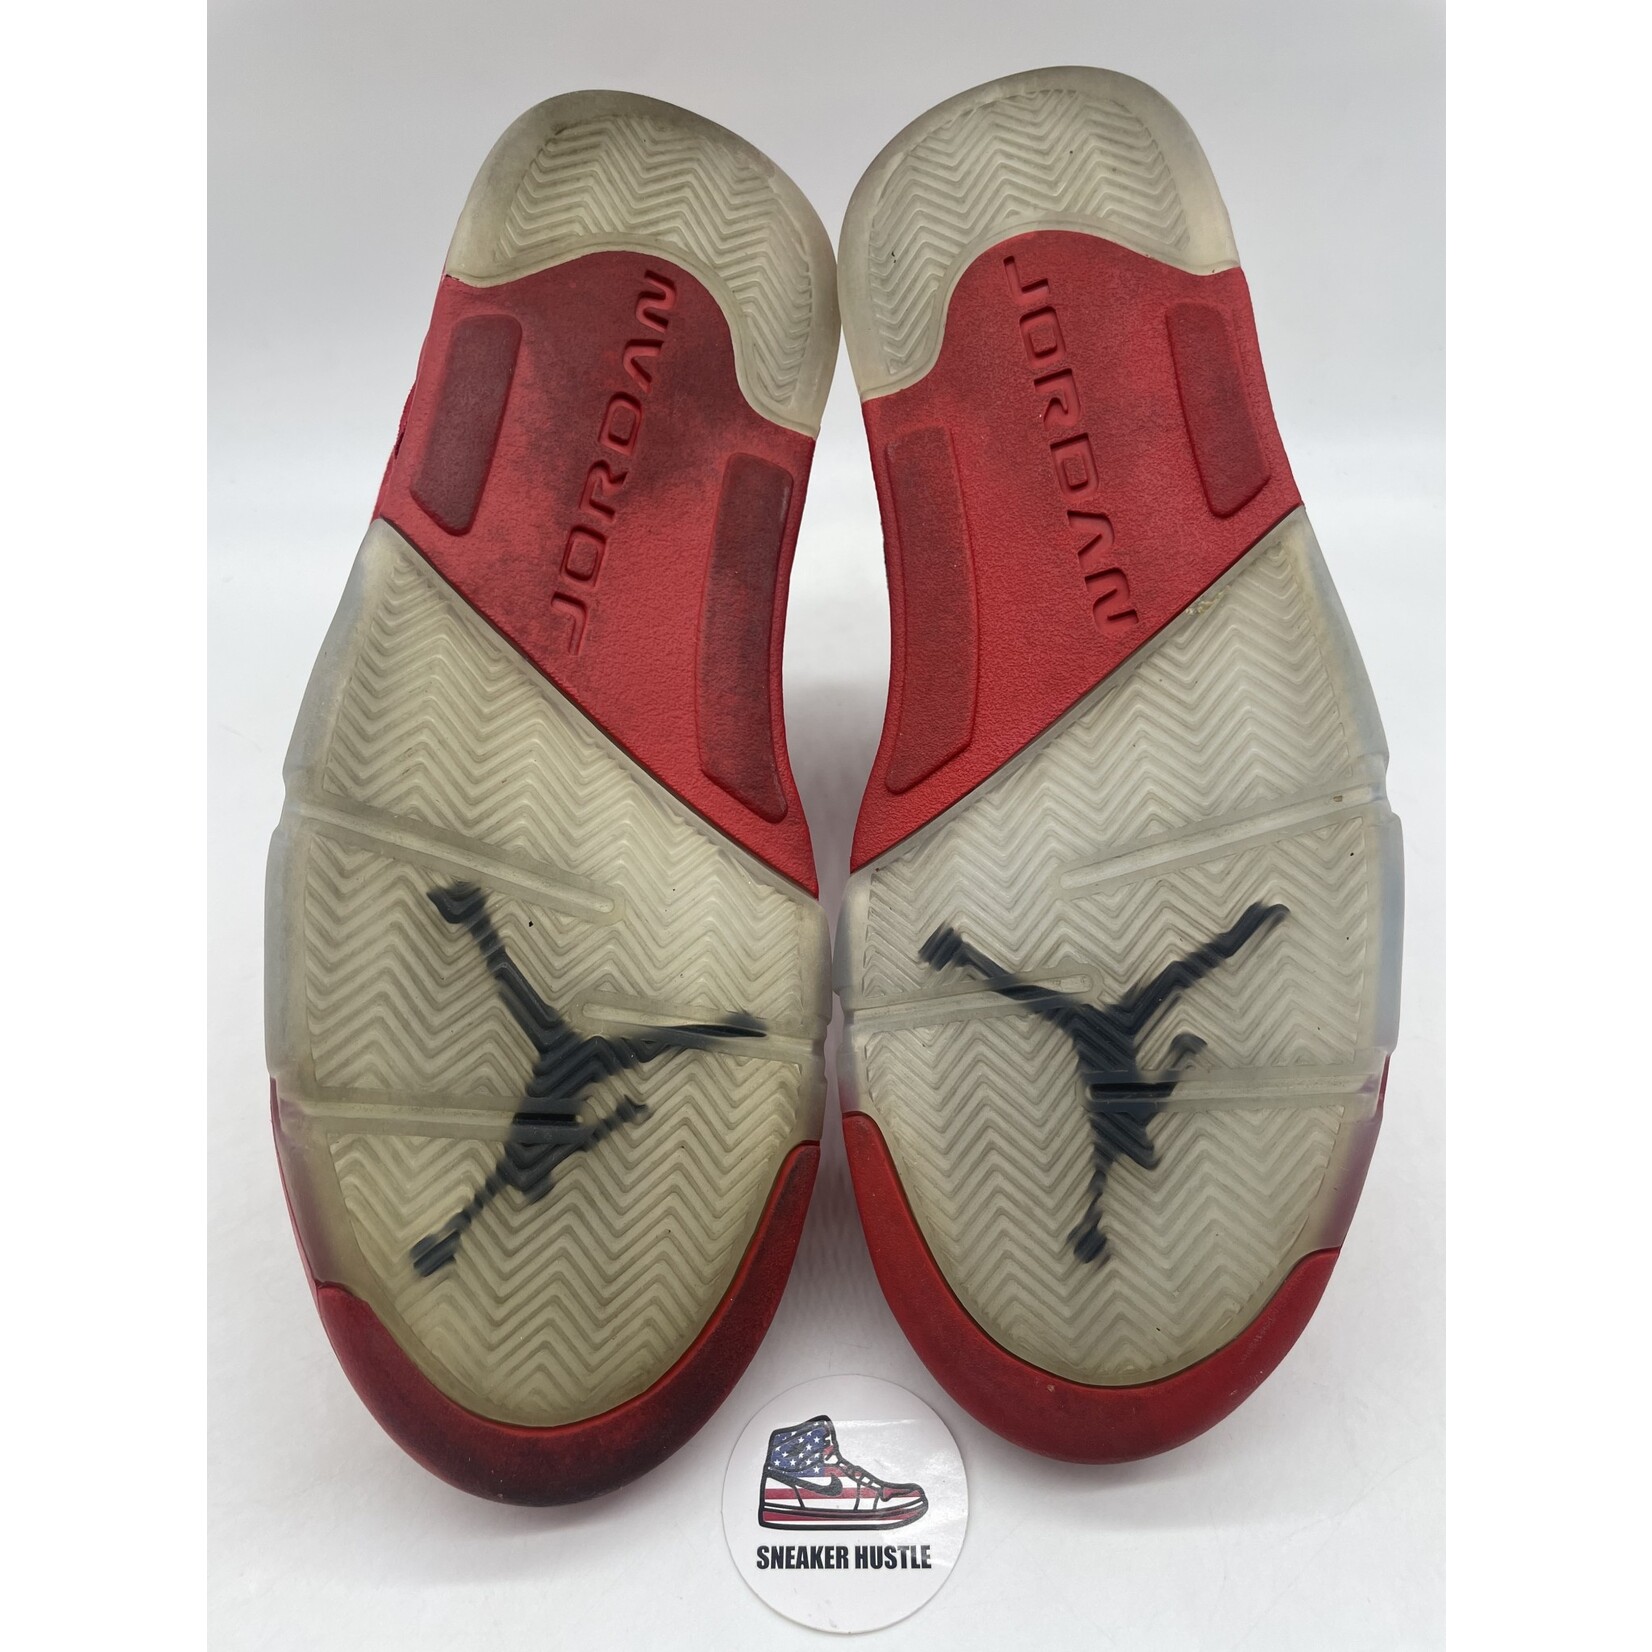 Air Jordan Jordan 5 Retro Red Suede